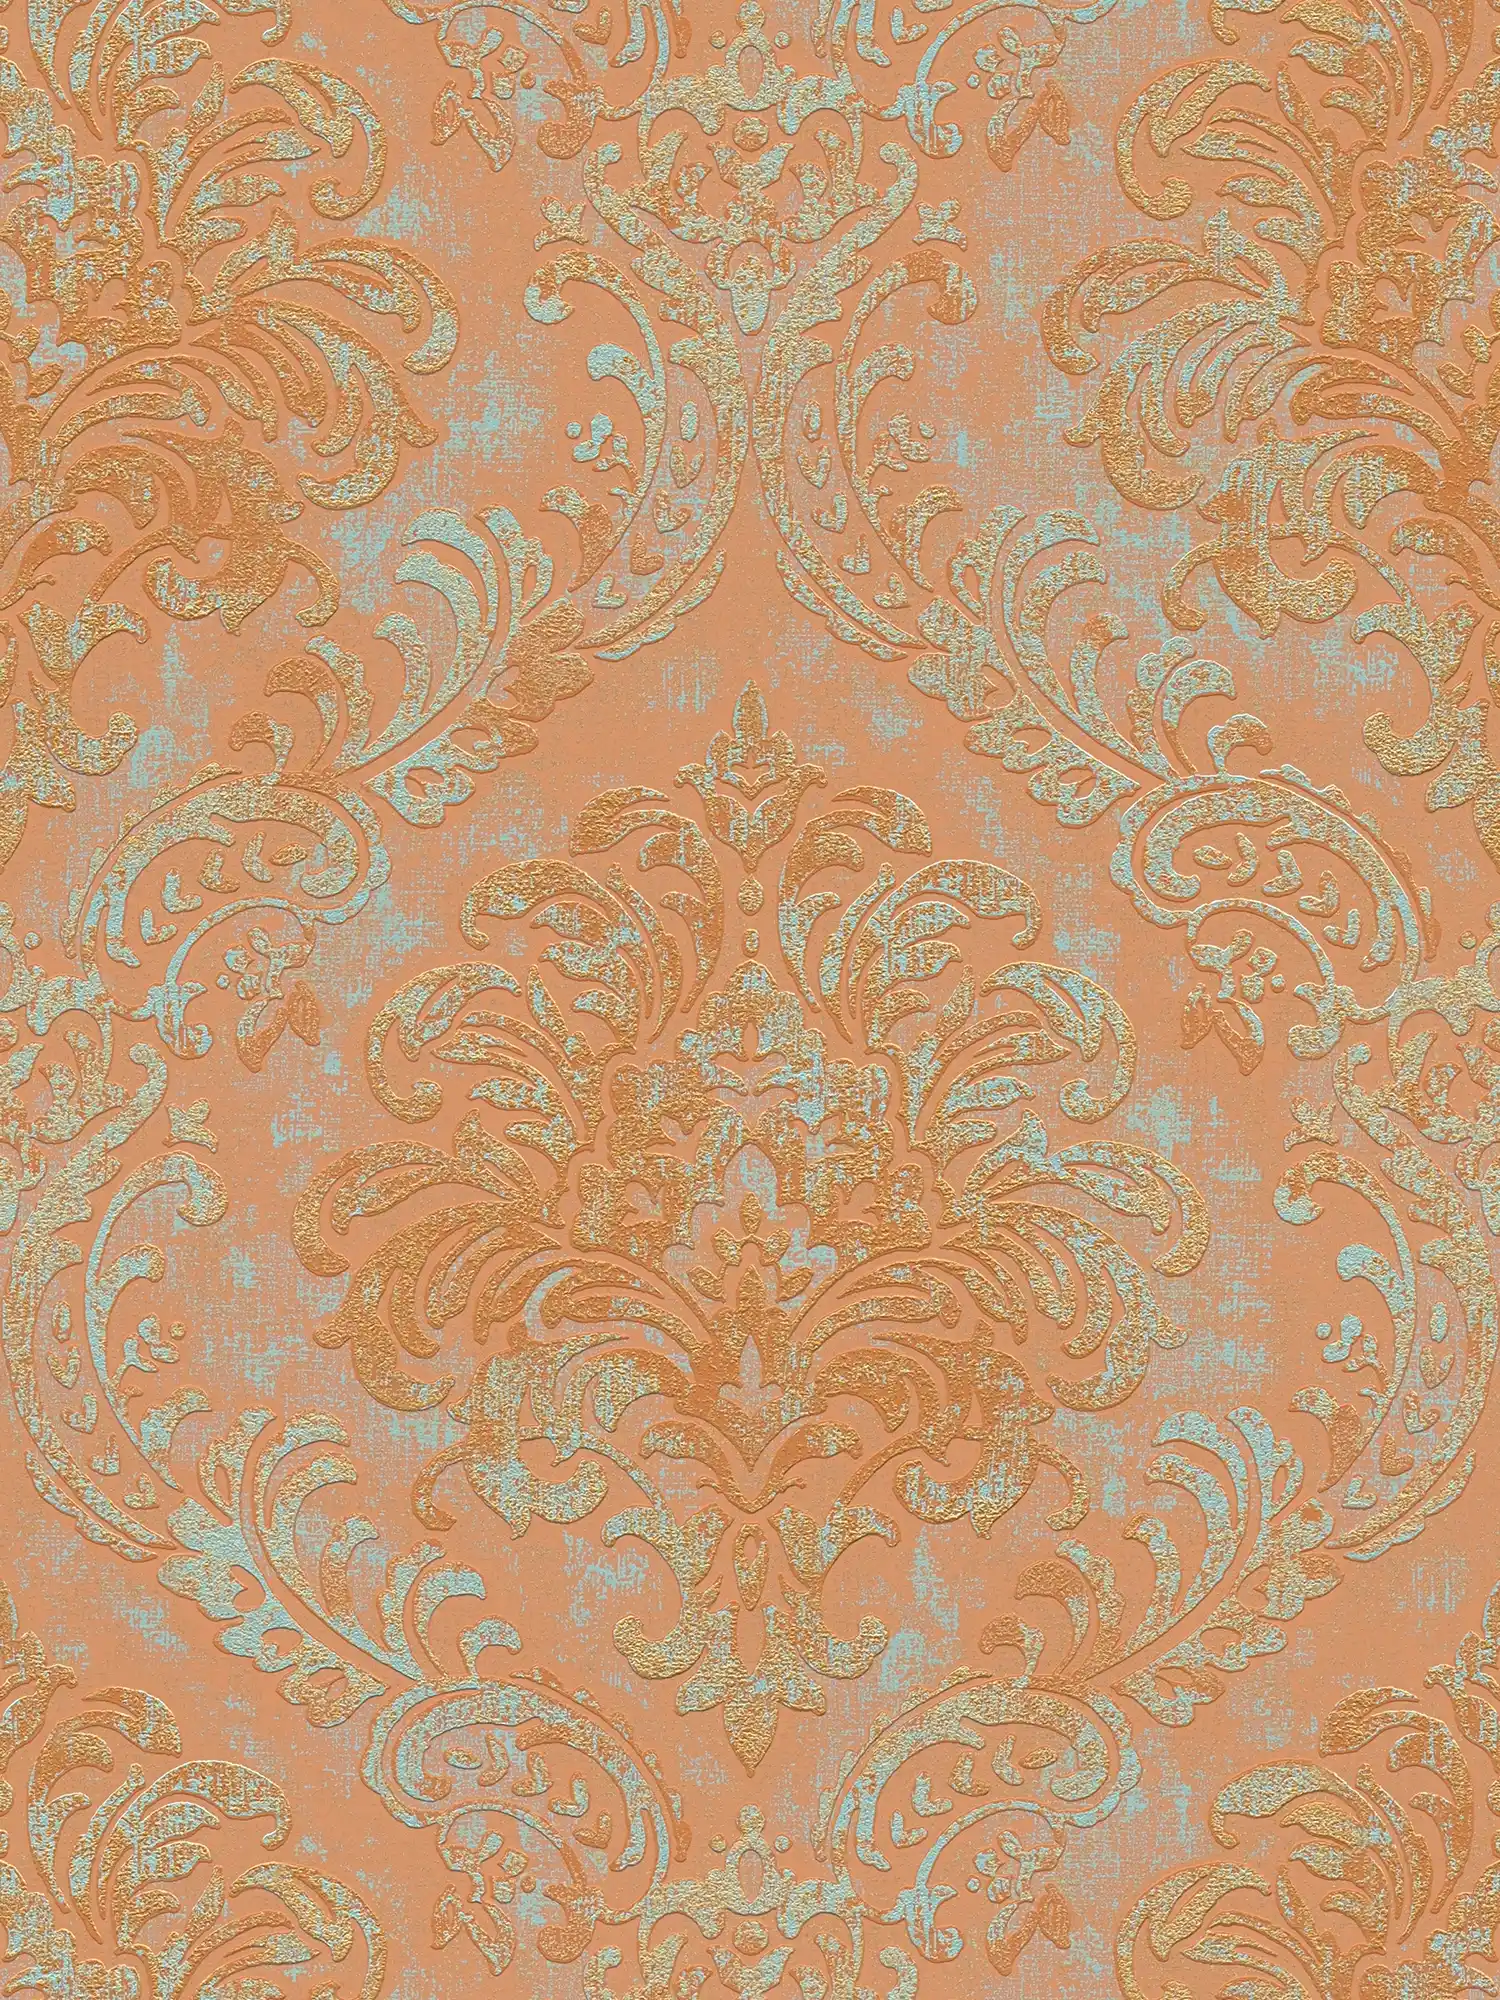 Papier peint intissé aspect métallique avec ornement - orange, rose, turquoise
